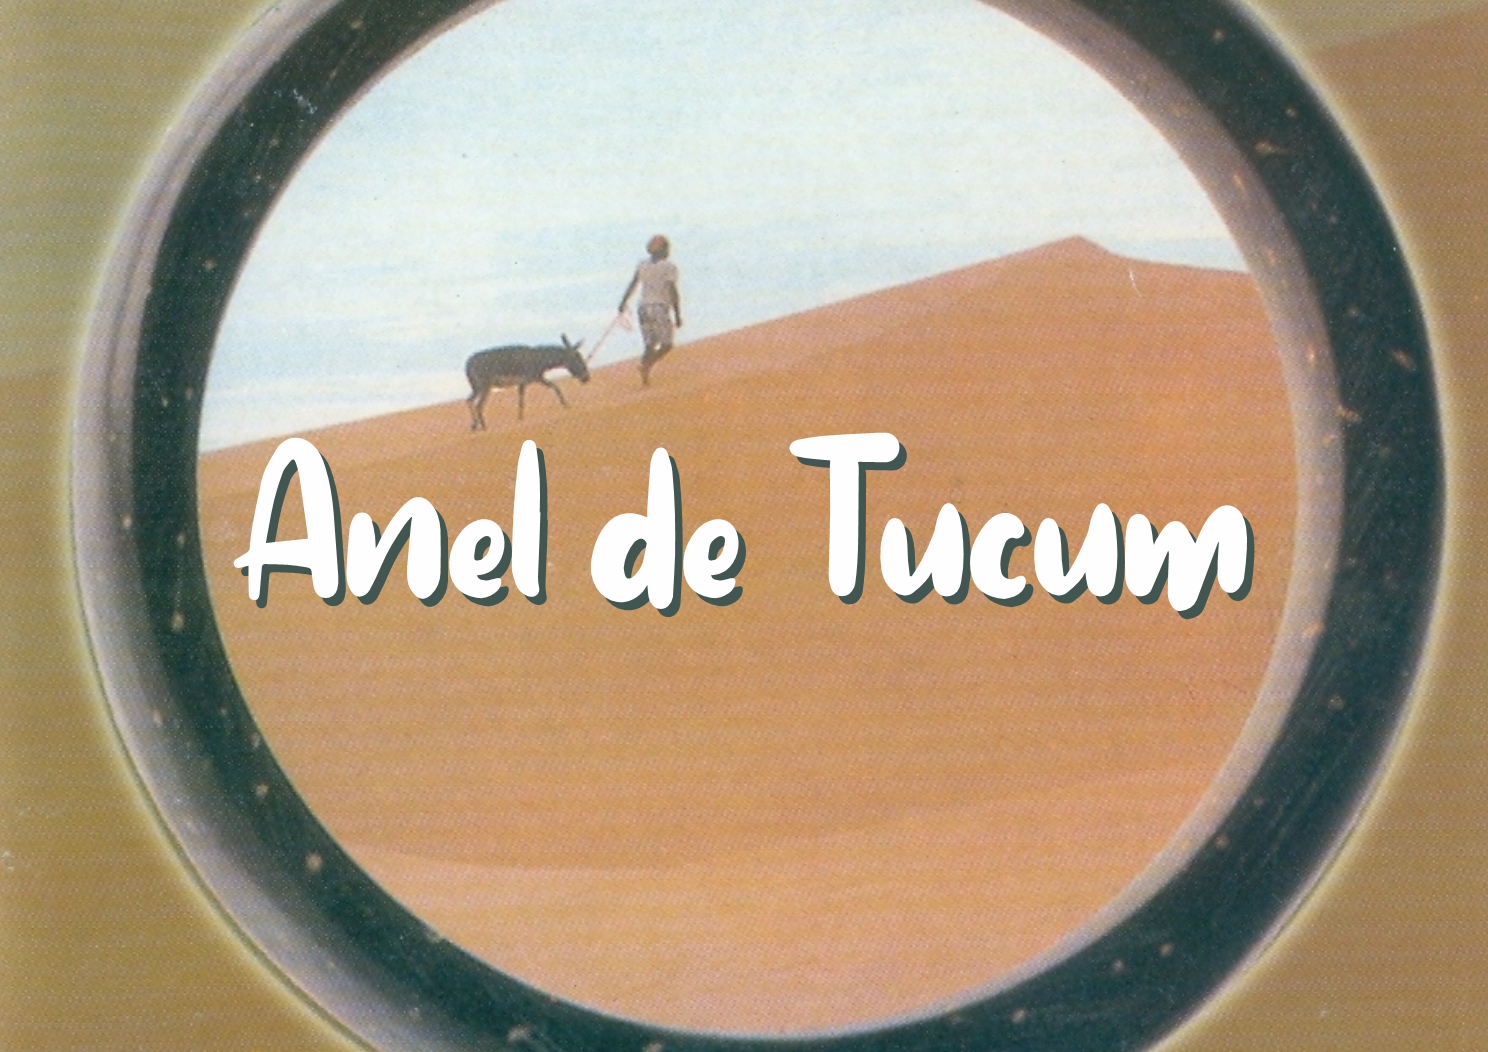 Verbo filmes disponibiliza filme “Anel de Tucum” em seu canal no Youtube